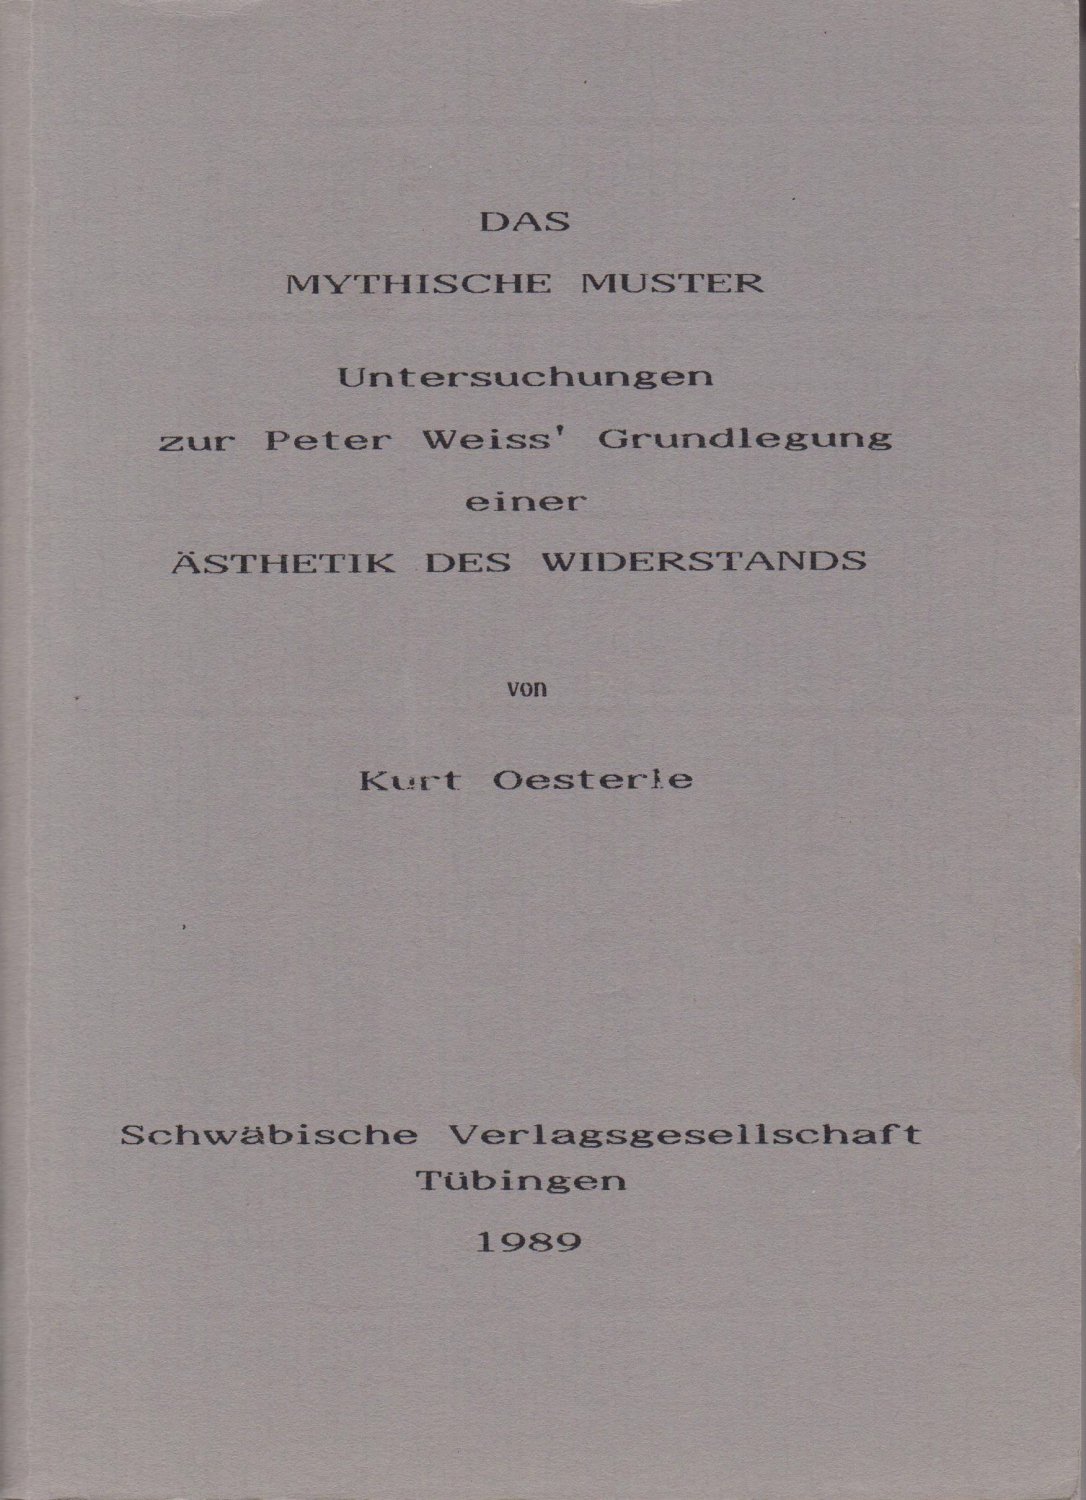 OESTERLE, Kurt:  Das Mythische Muster. Untersuchungen zur Peter Weiss' Grundlegung einer Ästhetik des Widerstands. Philosophische Dissertation, Tübingen. 